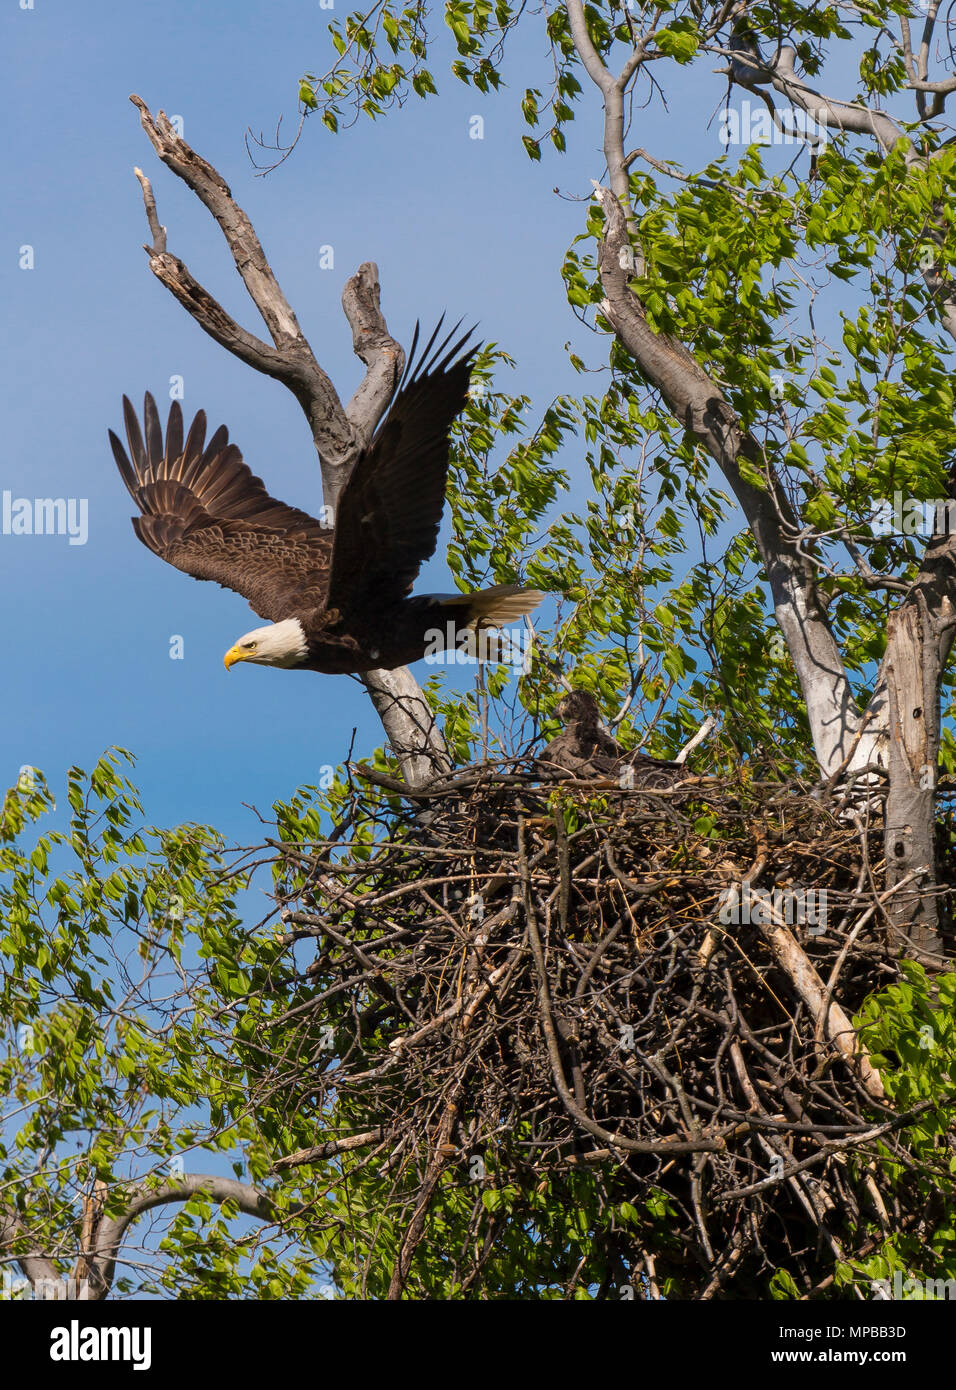 Aquila dal nido immagini e fotografie stock ad alta risoluzione - Alamy